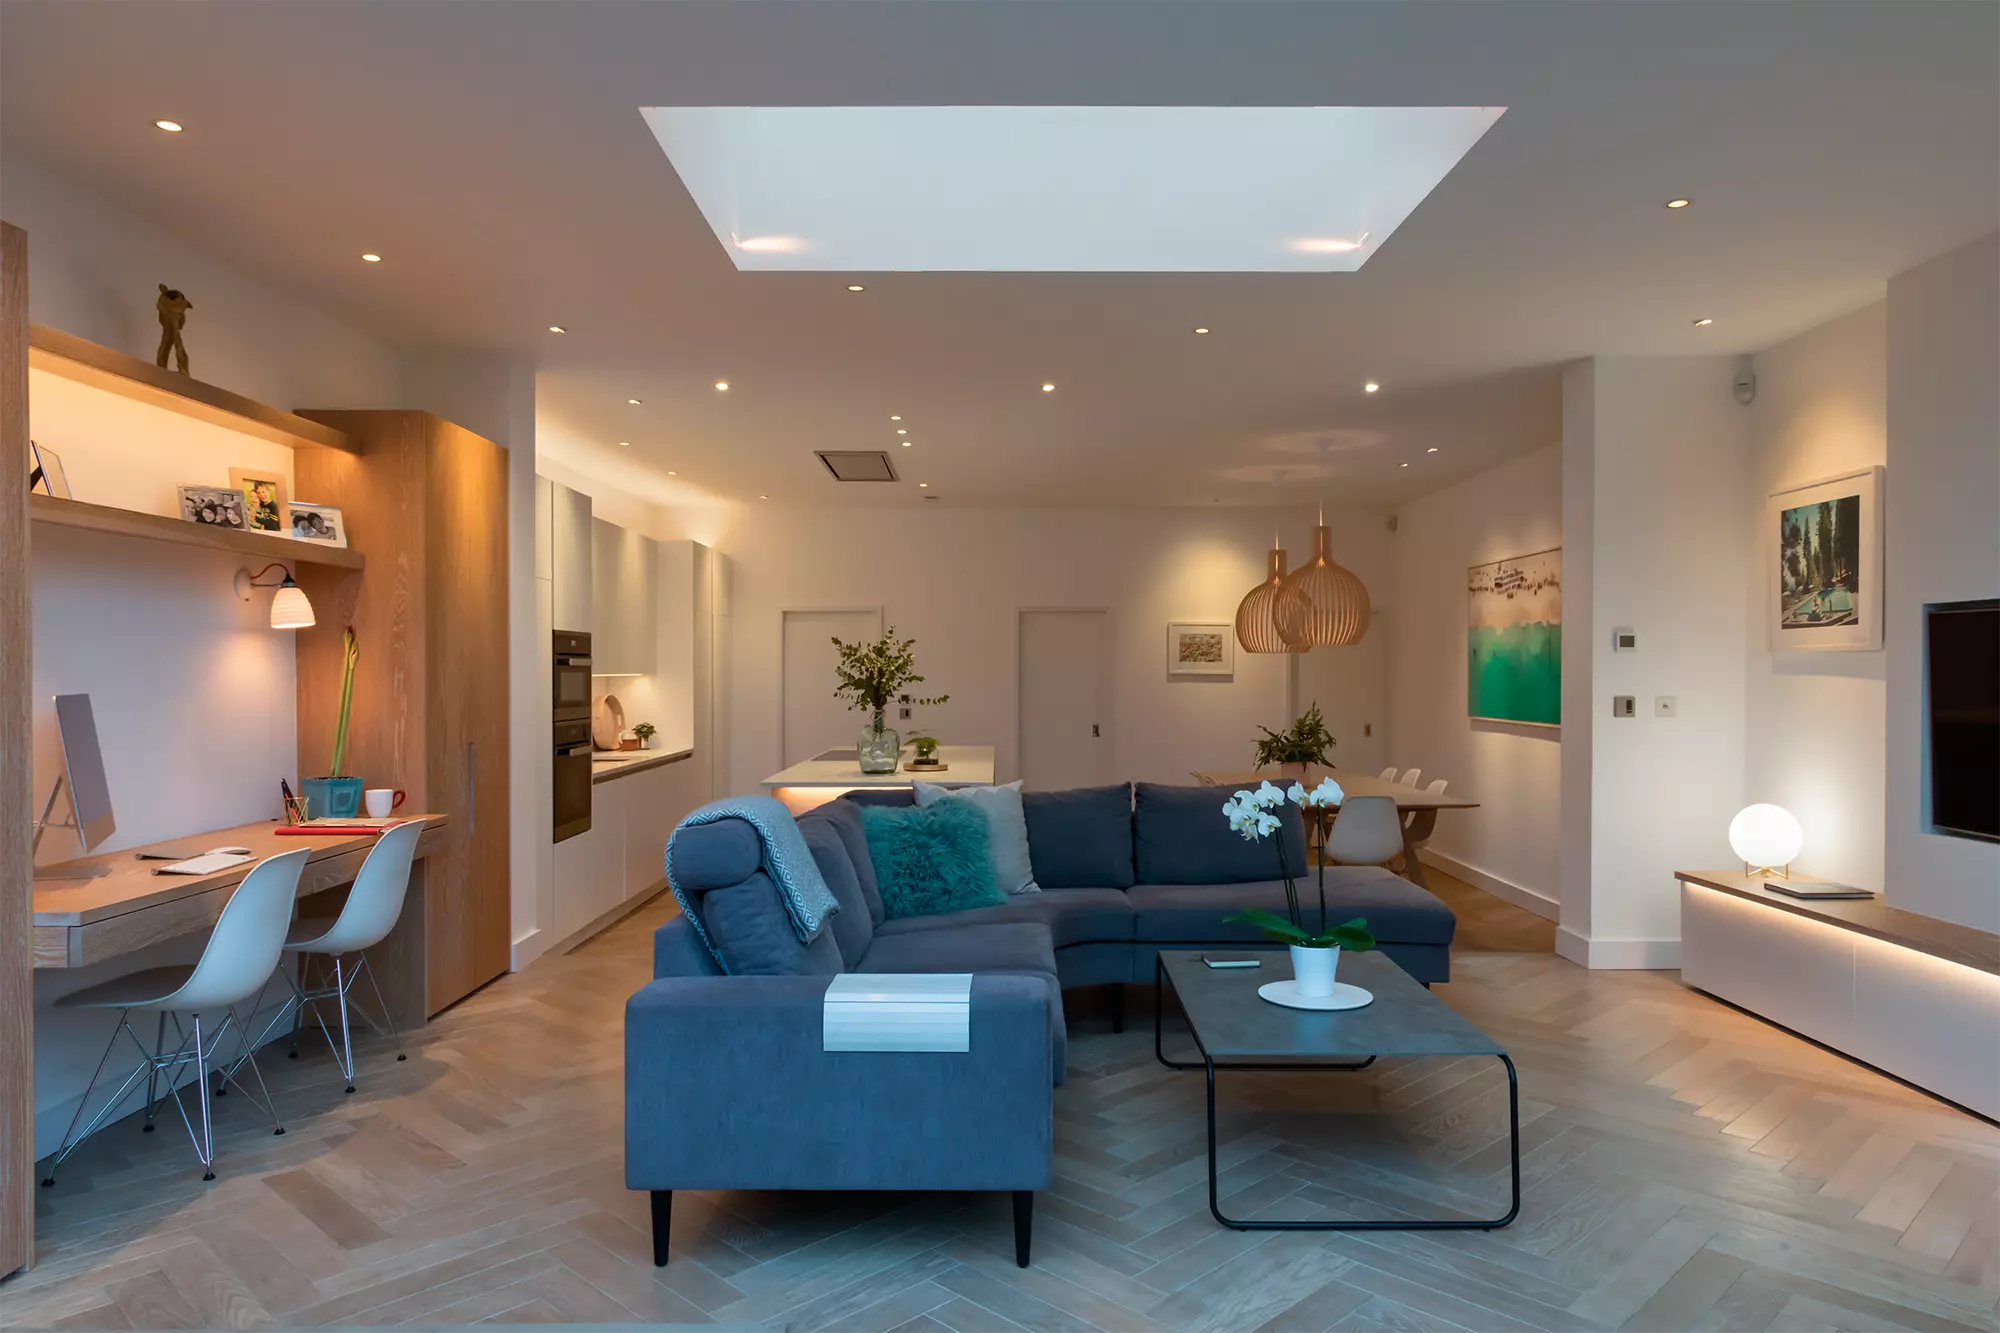 Un soggiorno moderno e ben illuminato dotato di molteplici fonti di illuminazione, tra cui luci da incasso a soffitto e un ampio lucernario